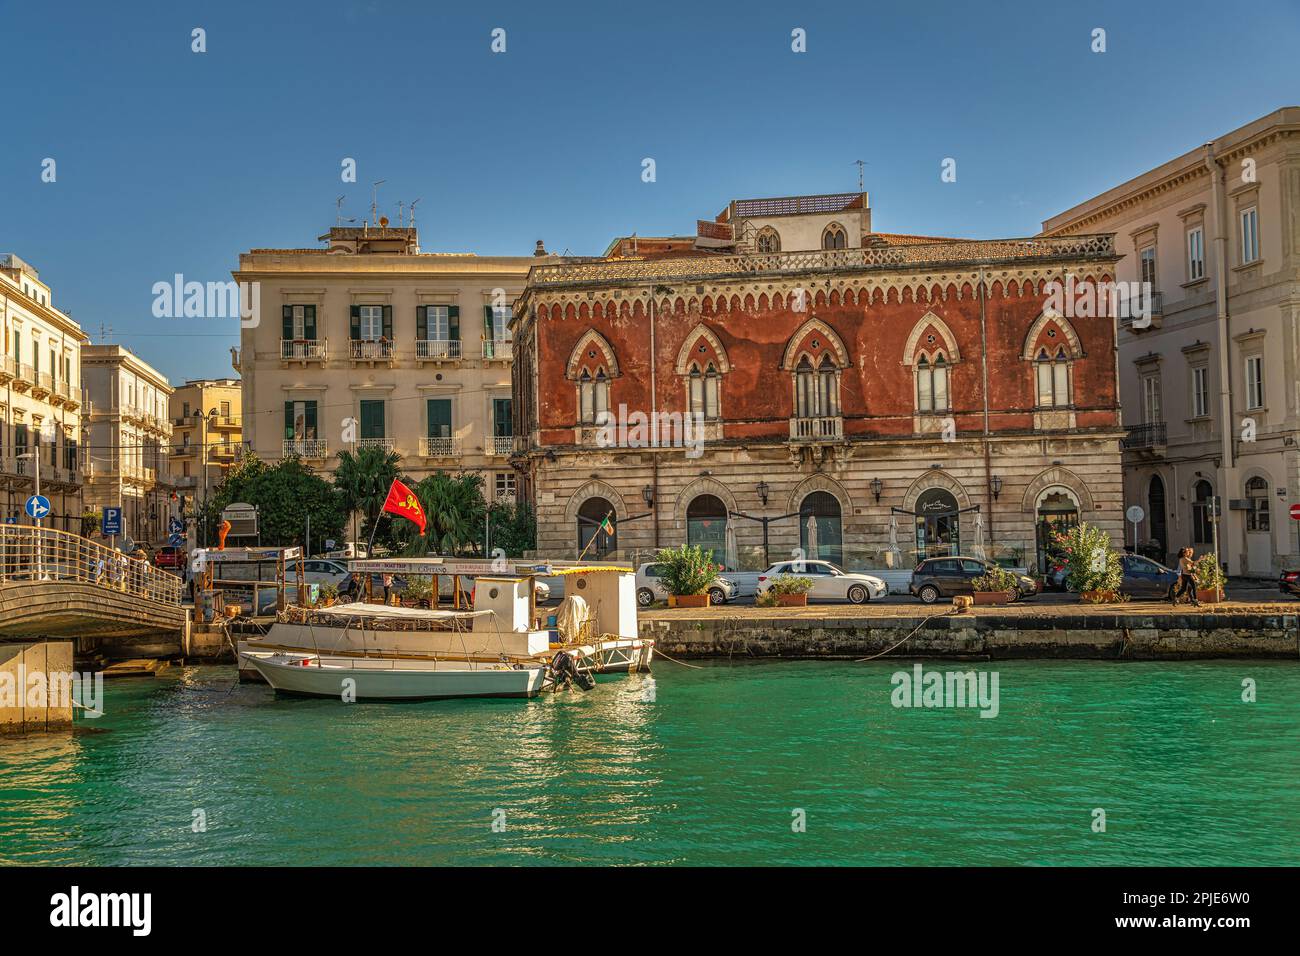 Palazzo Lucchetti Cassola reale, palazzo nobiliare in stile neogotico al porto di Siracusa. Siracusa, Sicilia, Italia, Europa Foto Stock